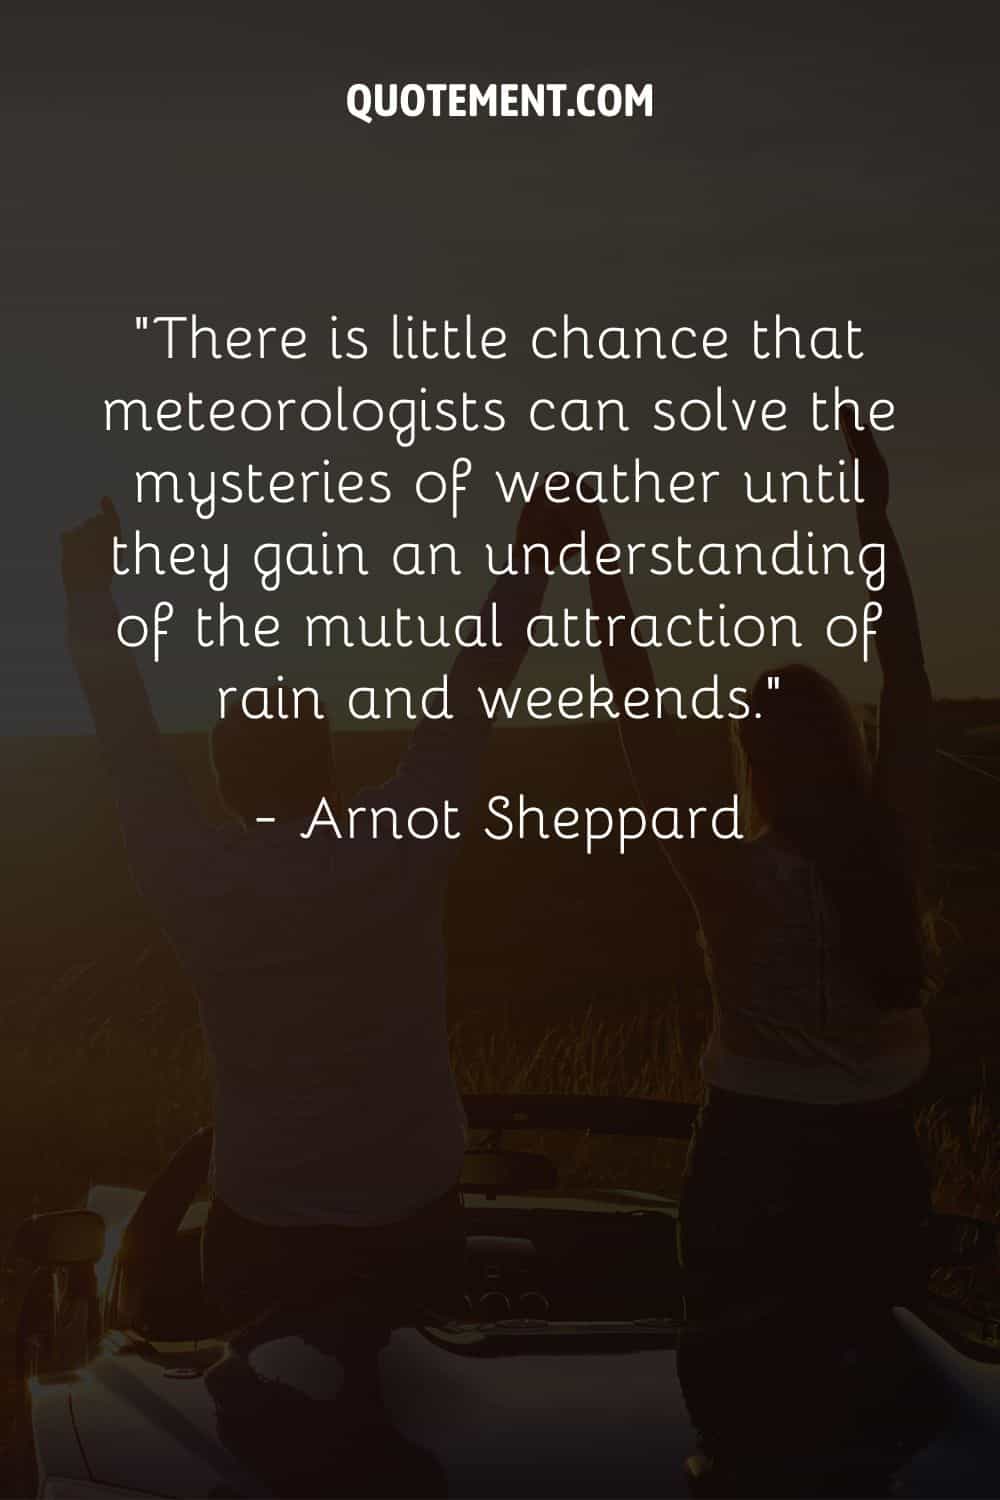 Hay pocas posibilidades de que los meteorólogos puedan resolver los misterios del tiempo hasta que comprendan la atracción mutua de la lluvia y los fines de semana.